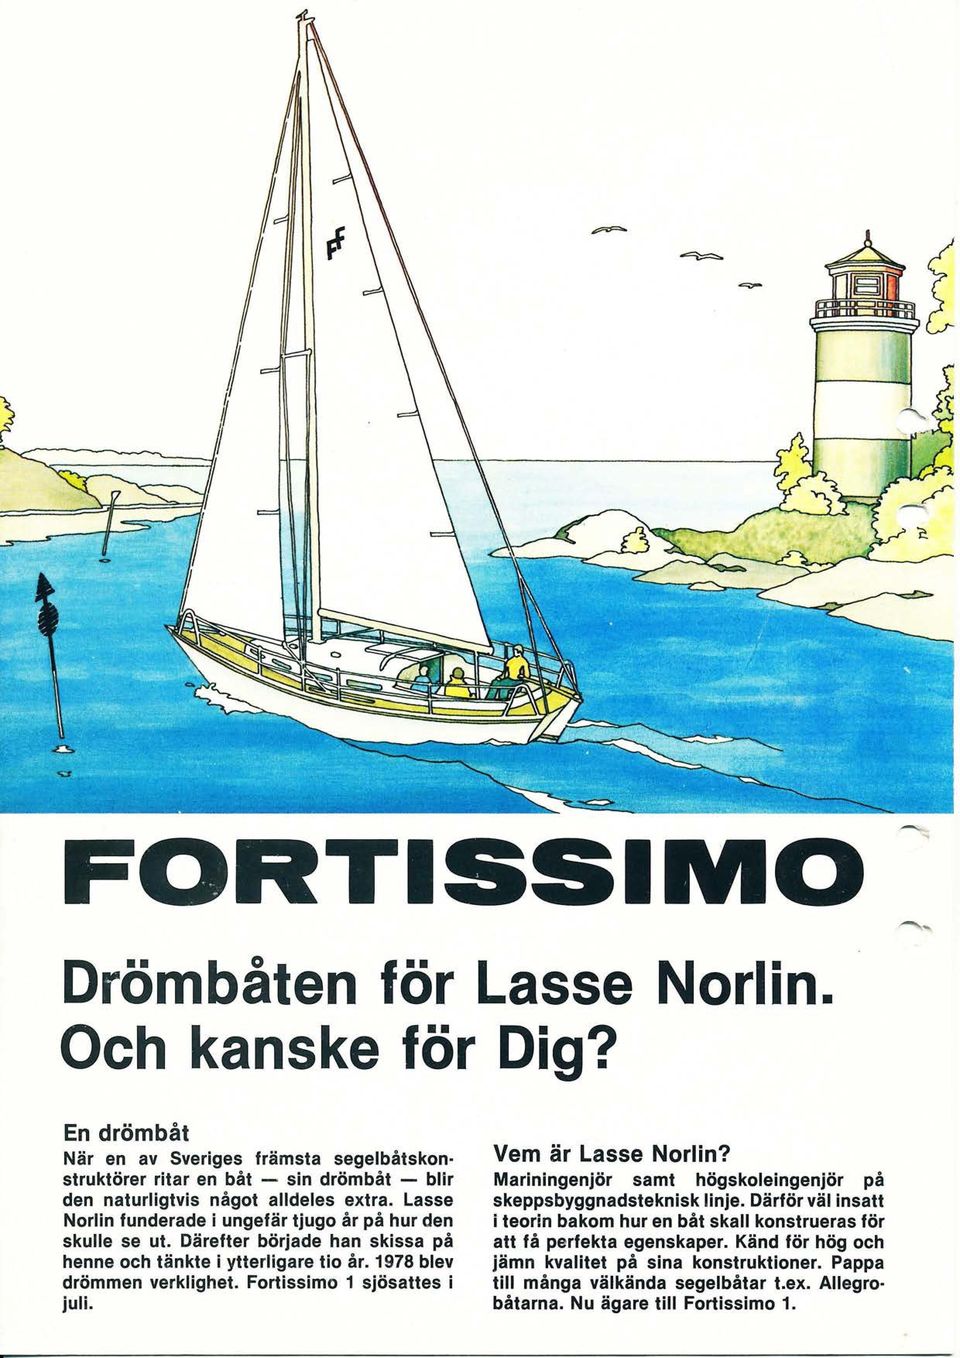 Lasse Norlin funderade i ungefär tjugo år på hur den skulle se ut. Därefter började han skissa på henne och tänkte i ytterligare tio år. 1978 blev drömmen verklighet.